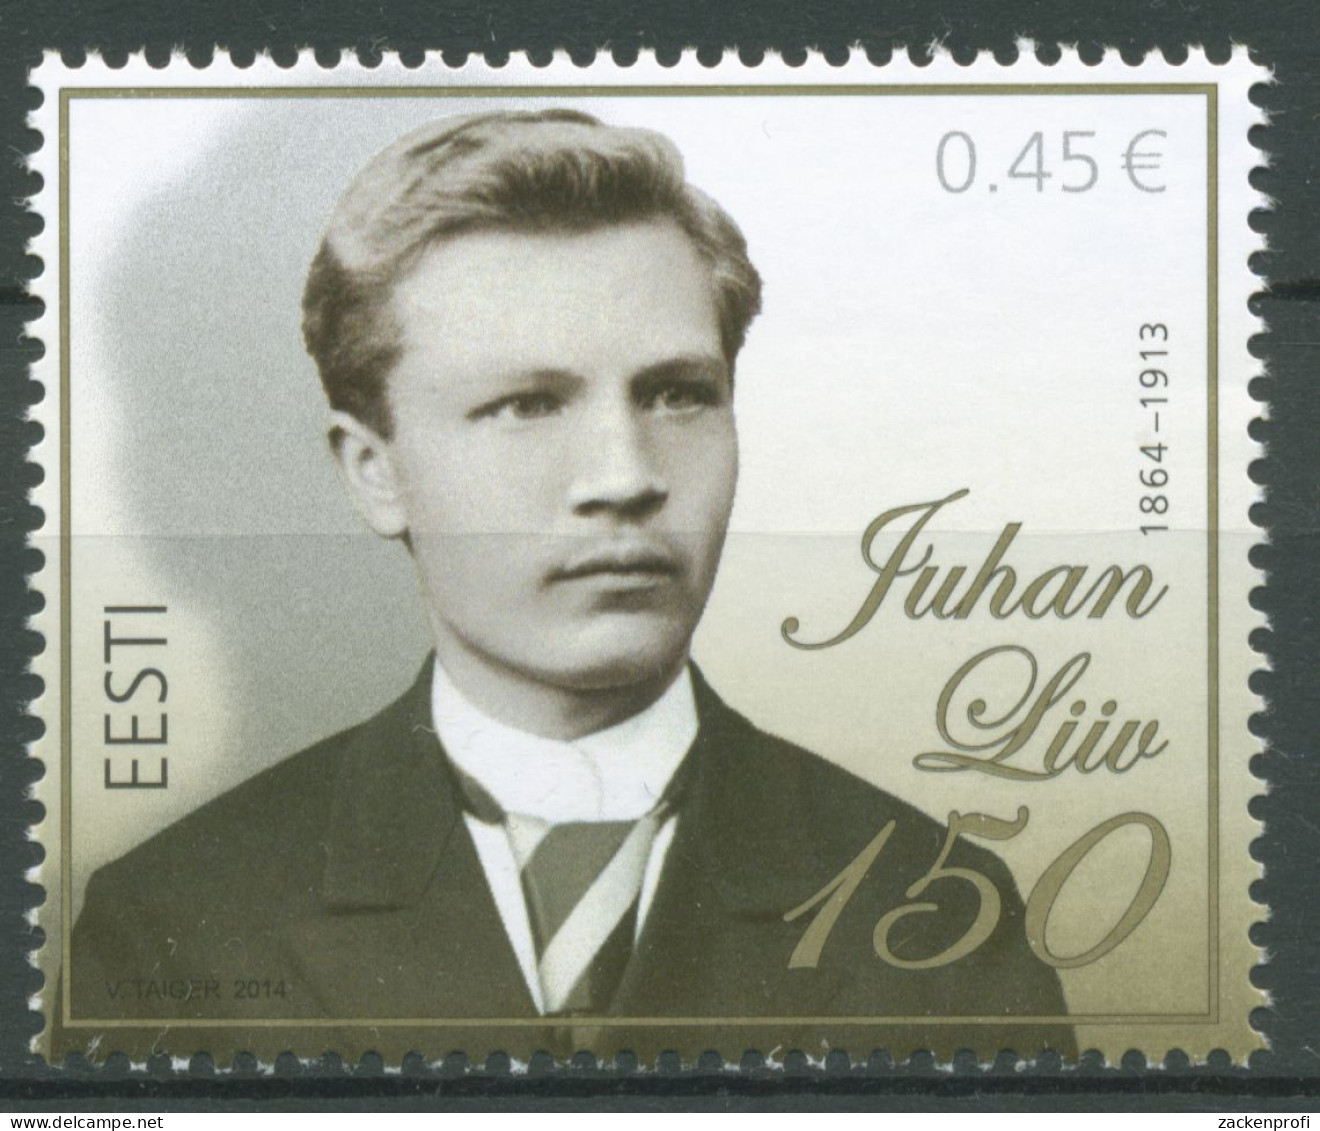 Estland 2014 Persönlichkeiten Schriftsteller Juhan Liiv 792 Postfrisch - Estland